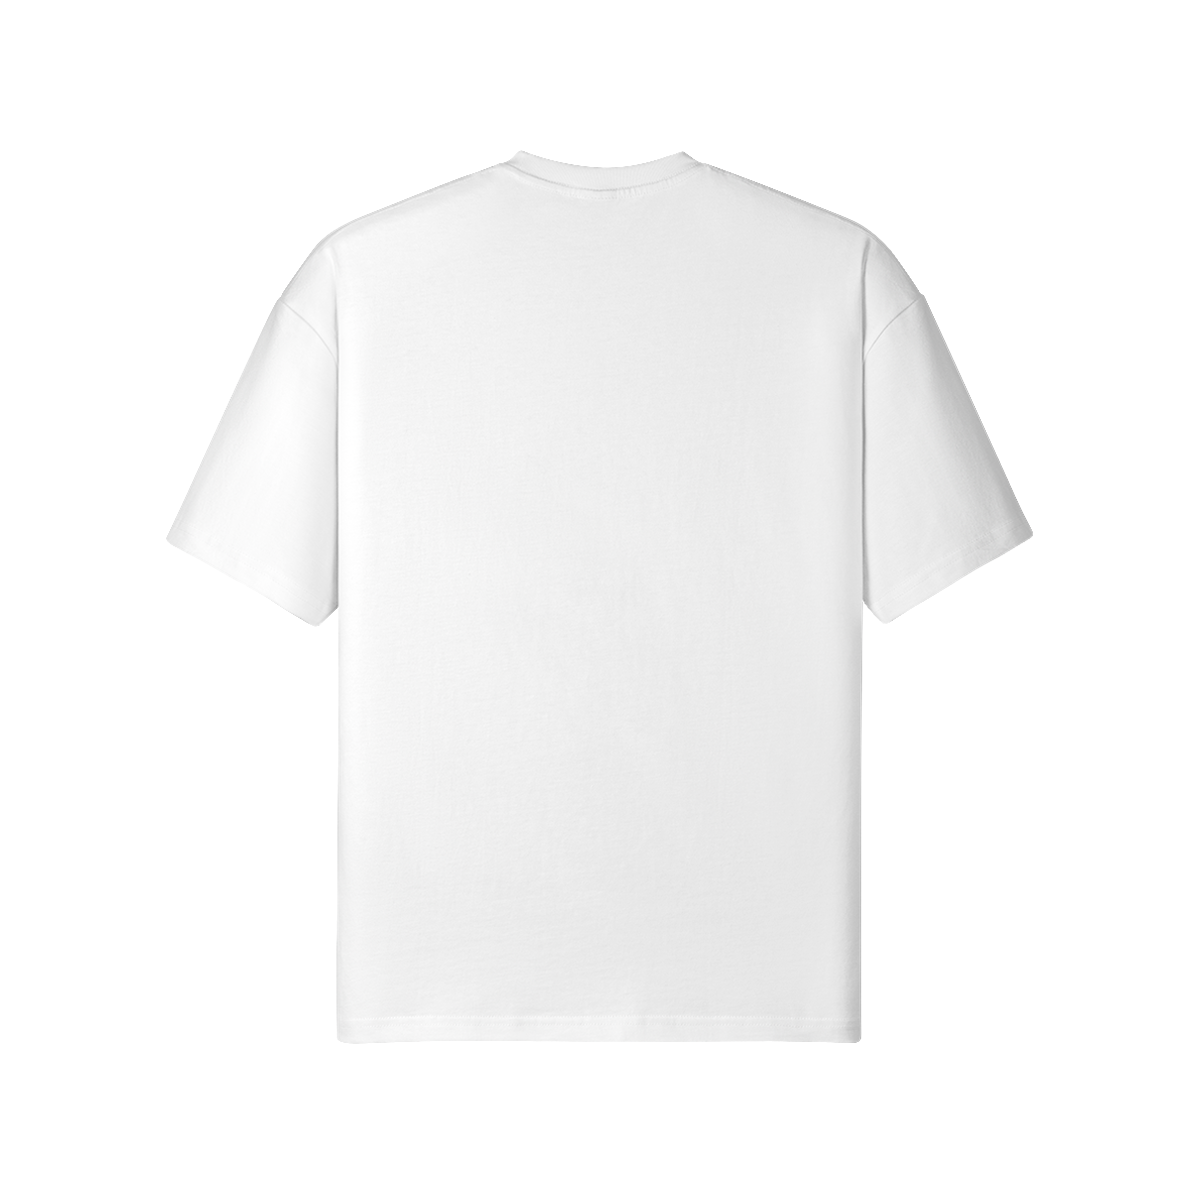 3RAVE - Unisex Loose T-shirt - back - white